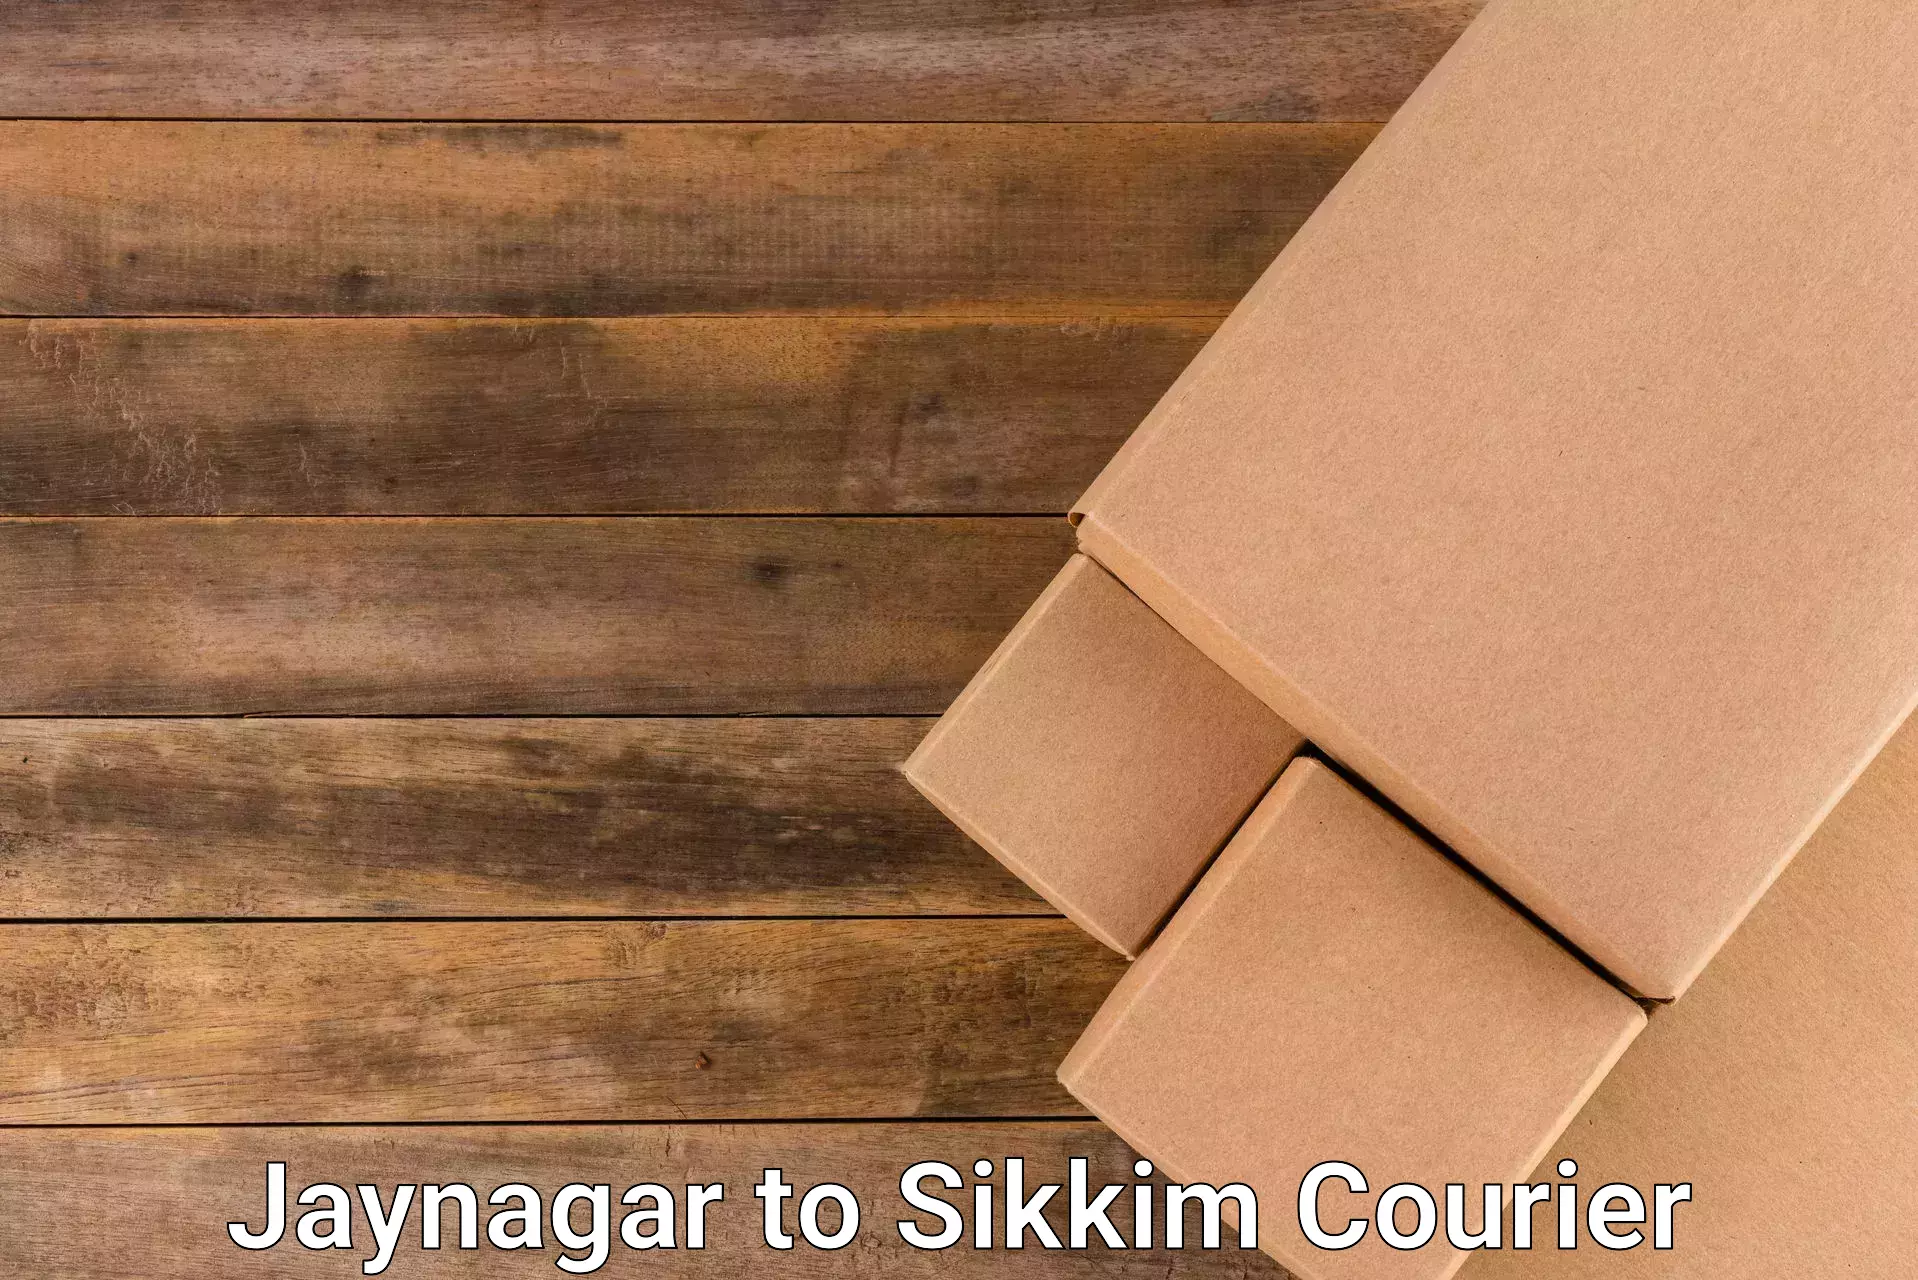 Seamless shipping service Jaynagar to Mangan